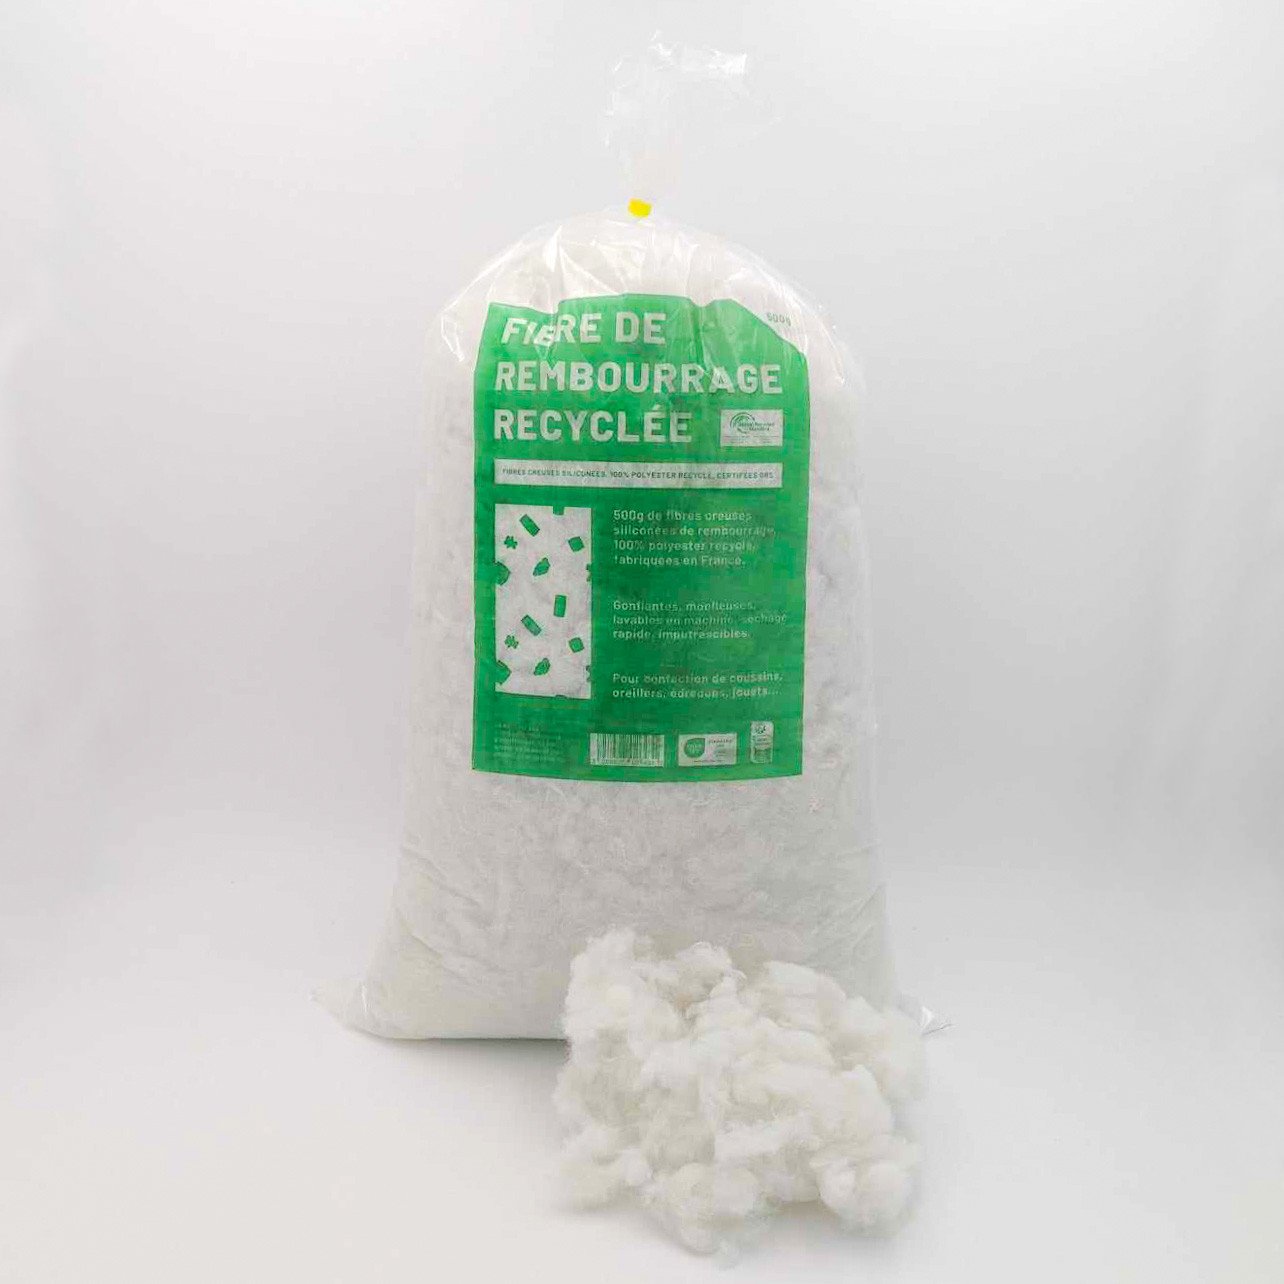 Fibre de polyester recyclé pour rembourrage, sac de 500grammes